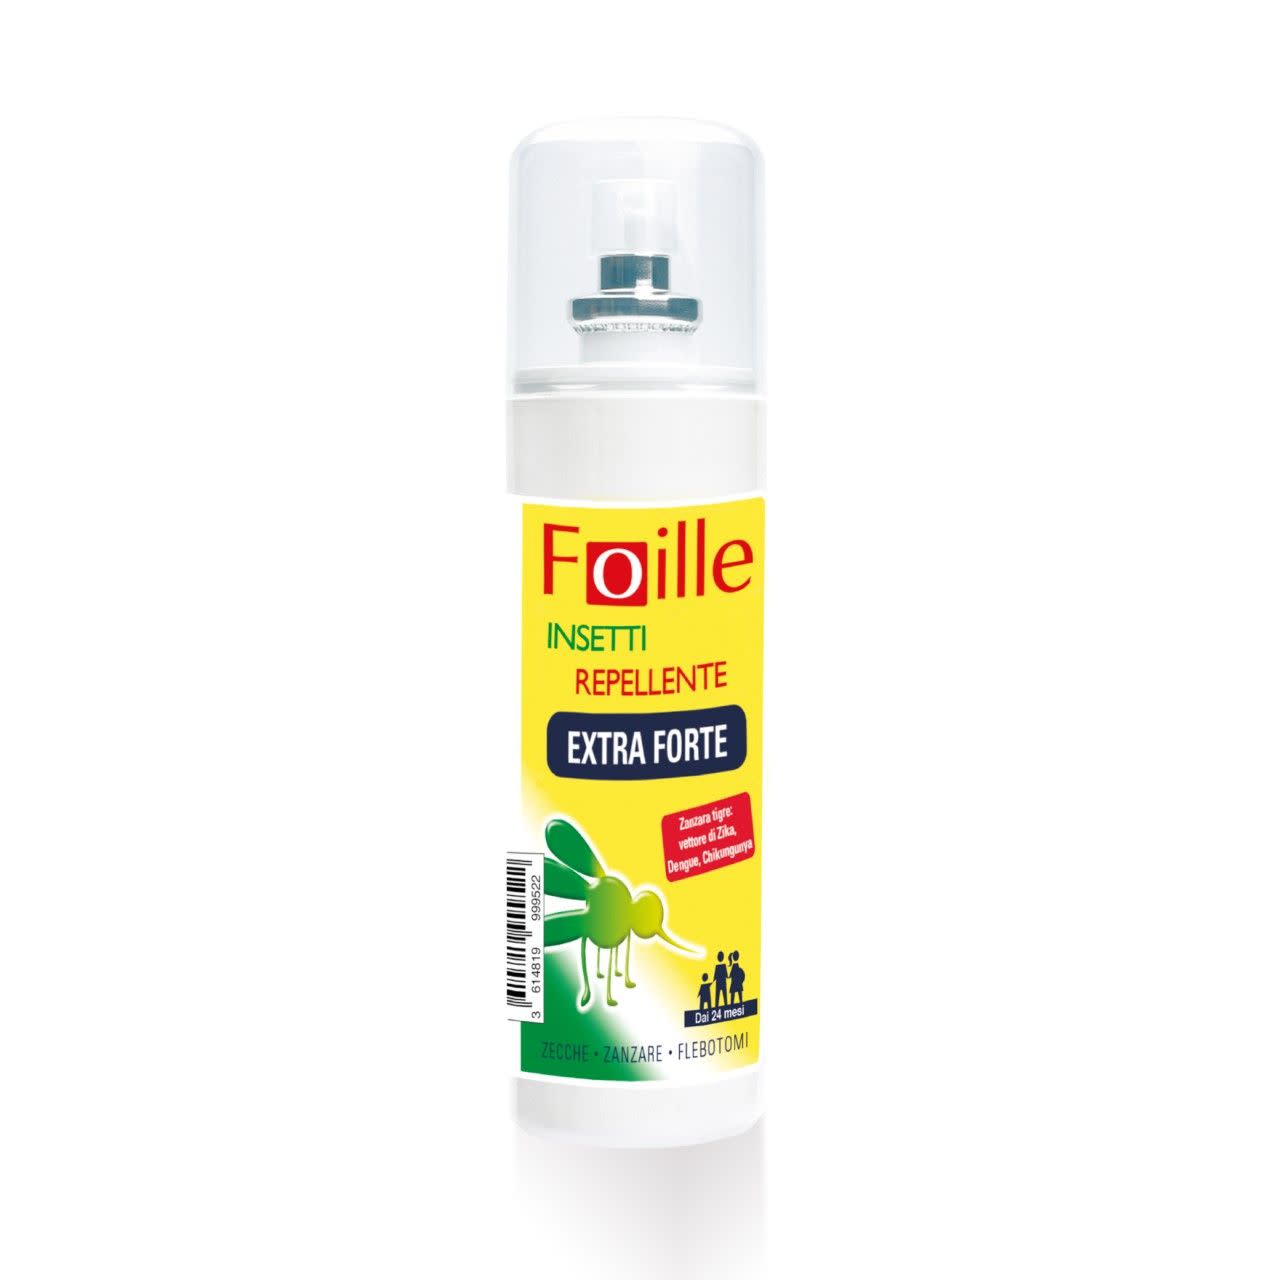 983282789 - Foille Repellente Insetti Extra Forte 100ml - 4709847_2.jpg